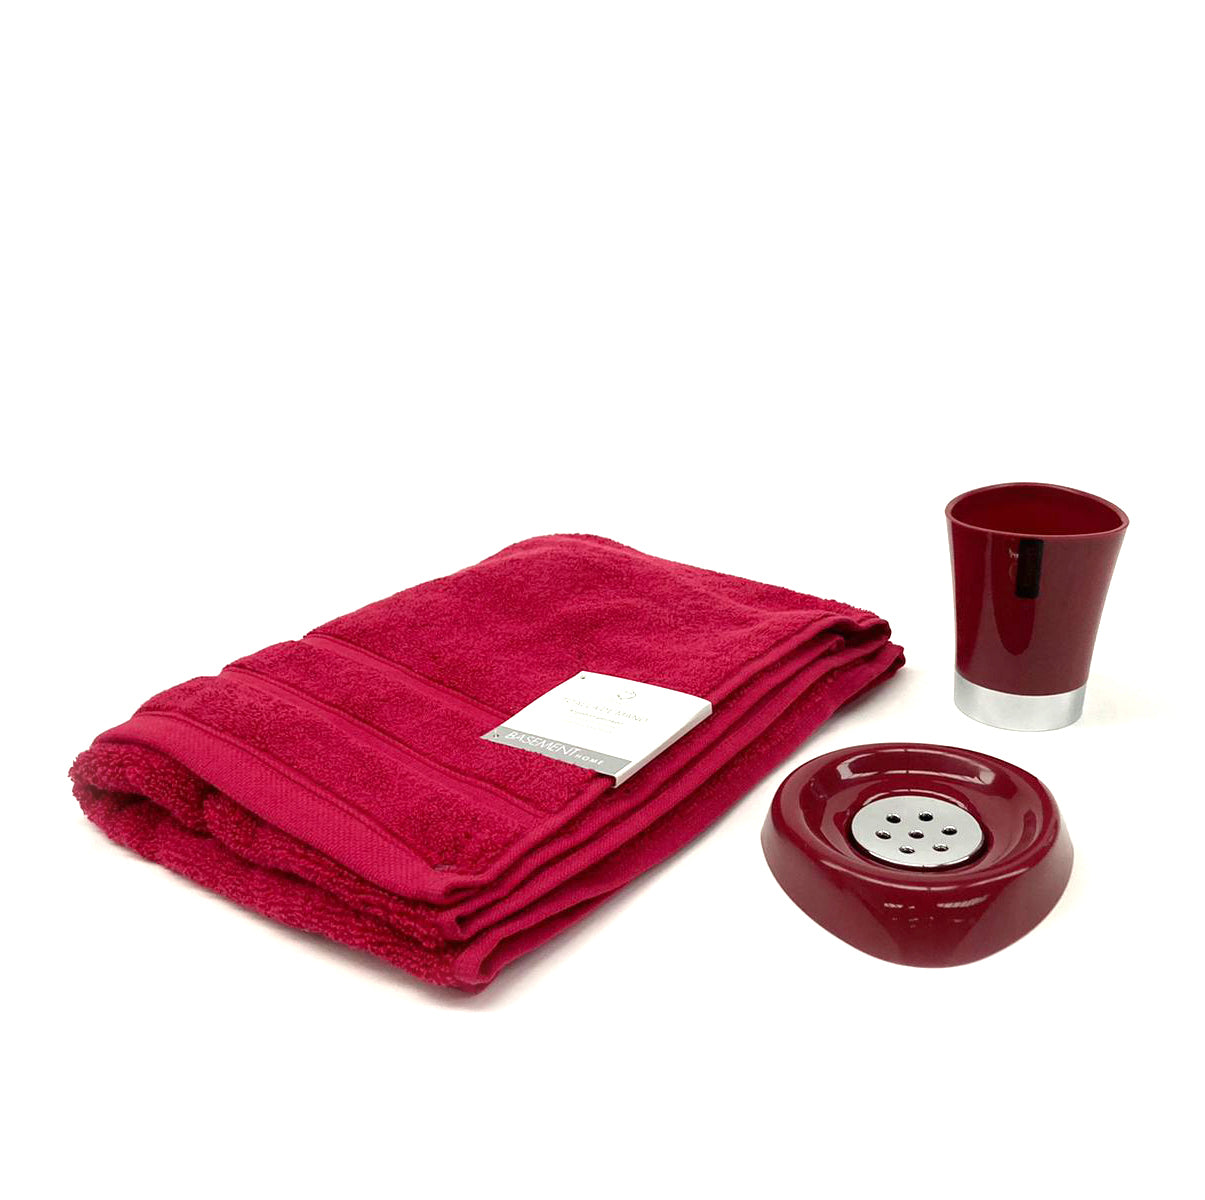 Pack 2 en 1 Toalla de manos Basement Home + Set de baño rojo (porta jabón y porta cepillos)